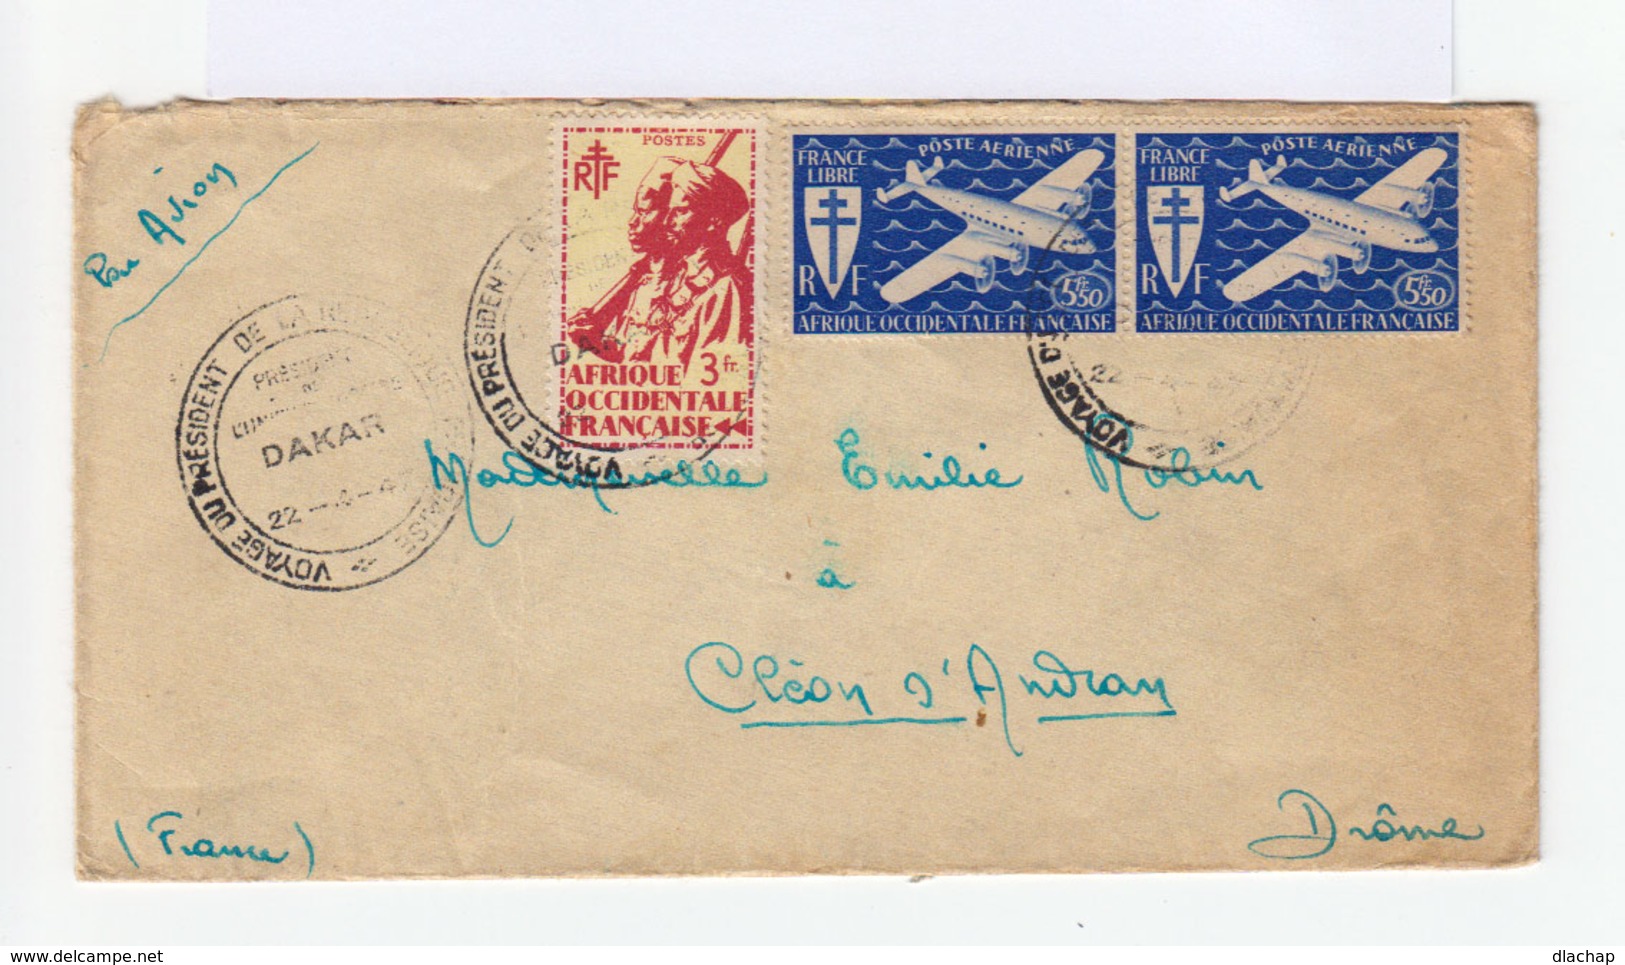 Sur Enveloppe Par Avion Paire Poste Aérienne France Libre Et Un Tirailleur Sénégalais 3 Fr. CAD 1947 . (739) - Lettres & Documents